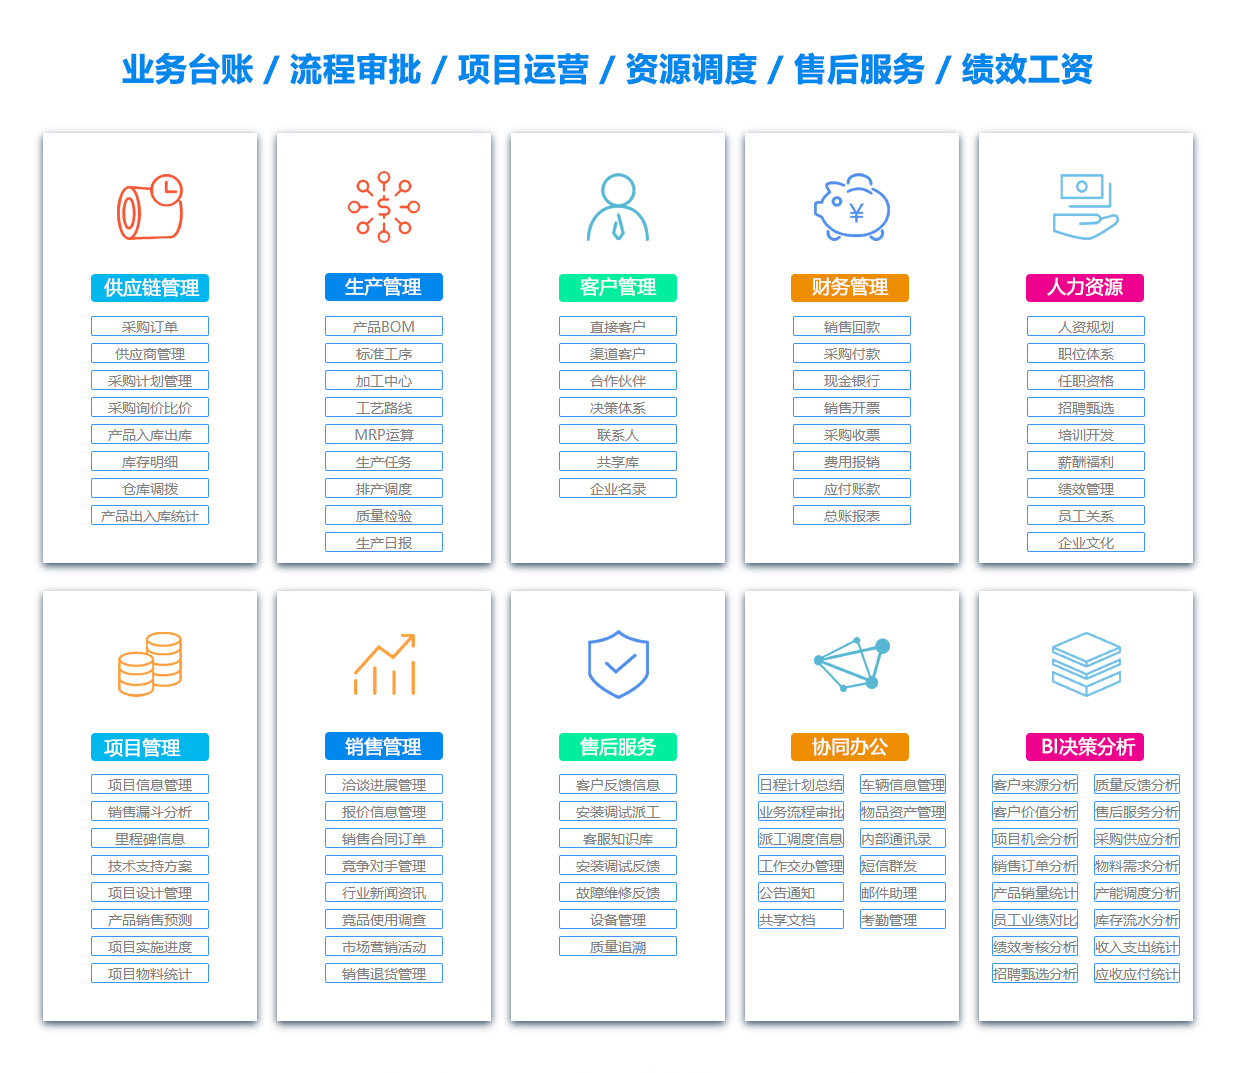 上海ASP:应用服务提供IT外包